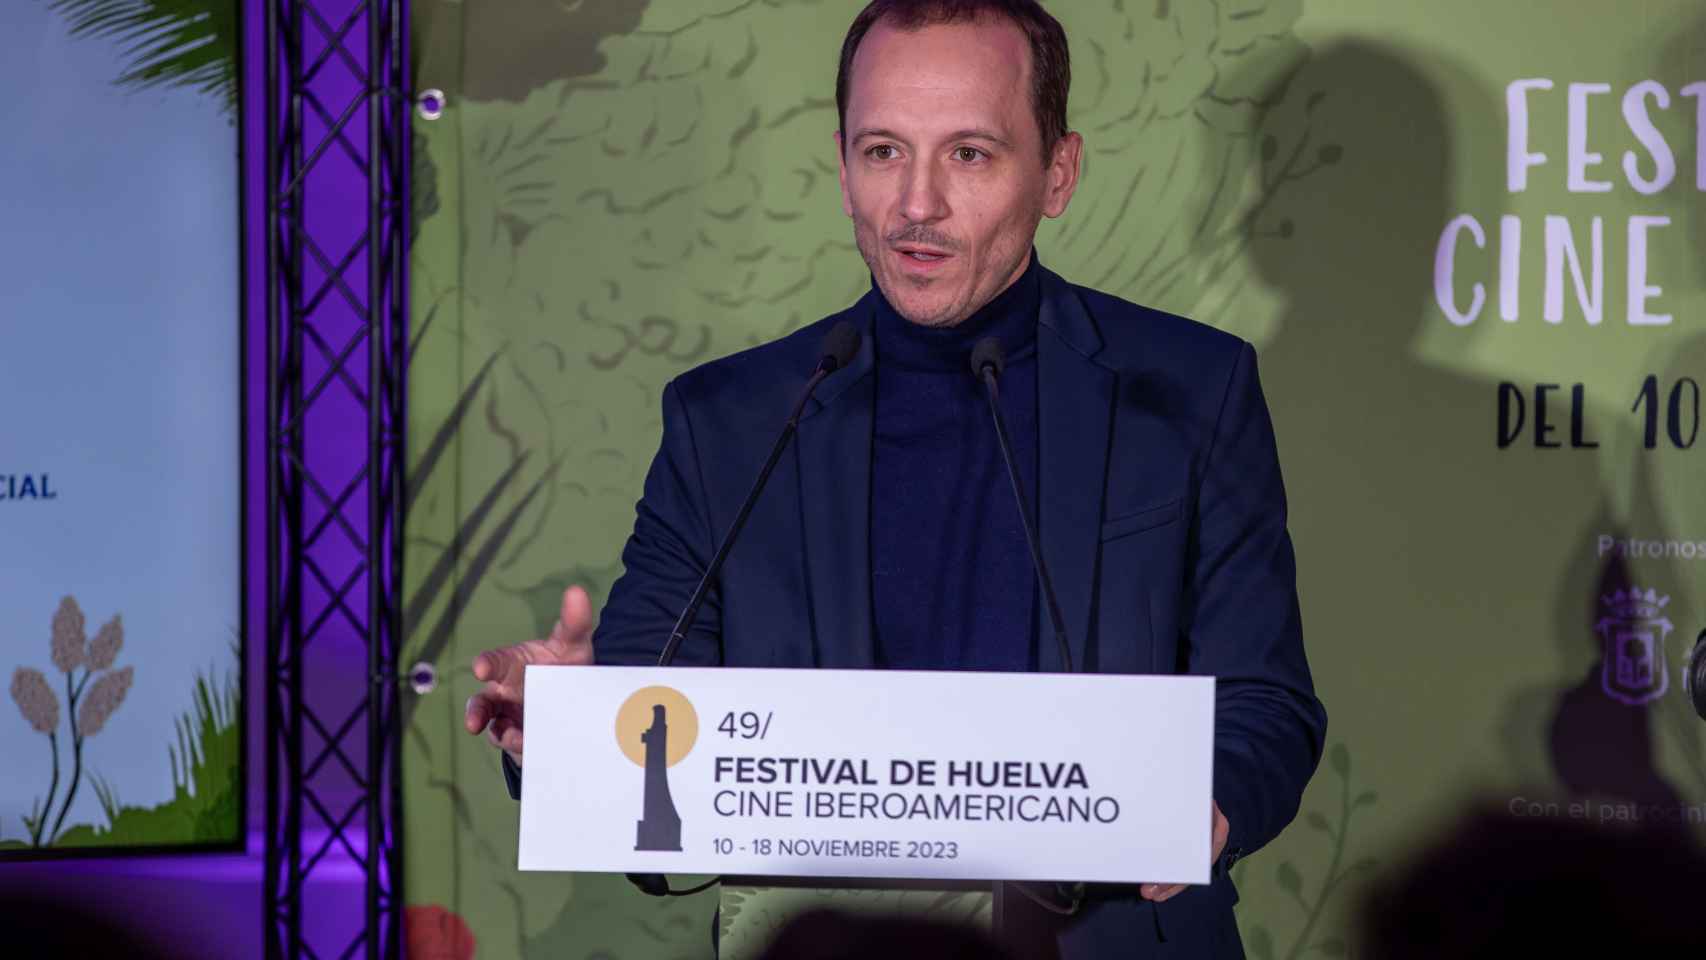 Manuel H. Martín, director del certamen onubense, en la presentación del festival que tuvo lugar en Madrid y Huelva.